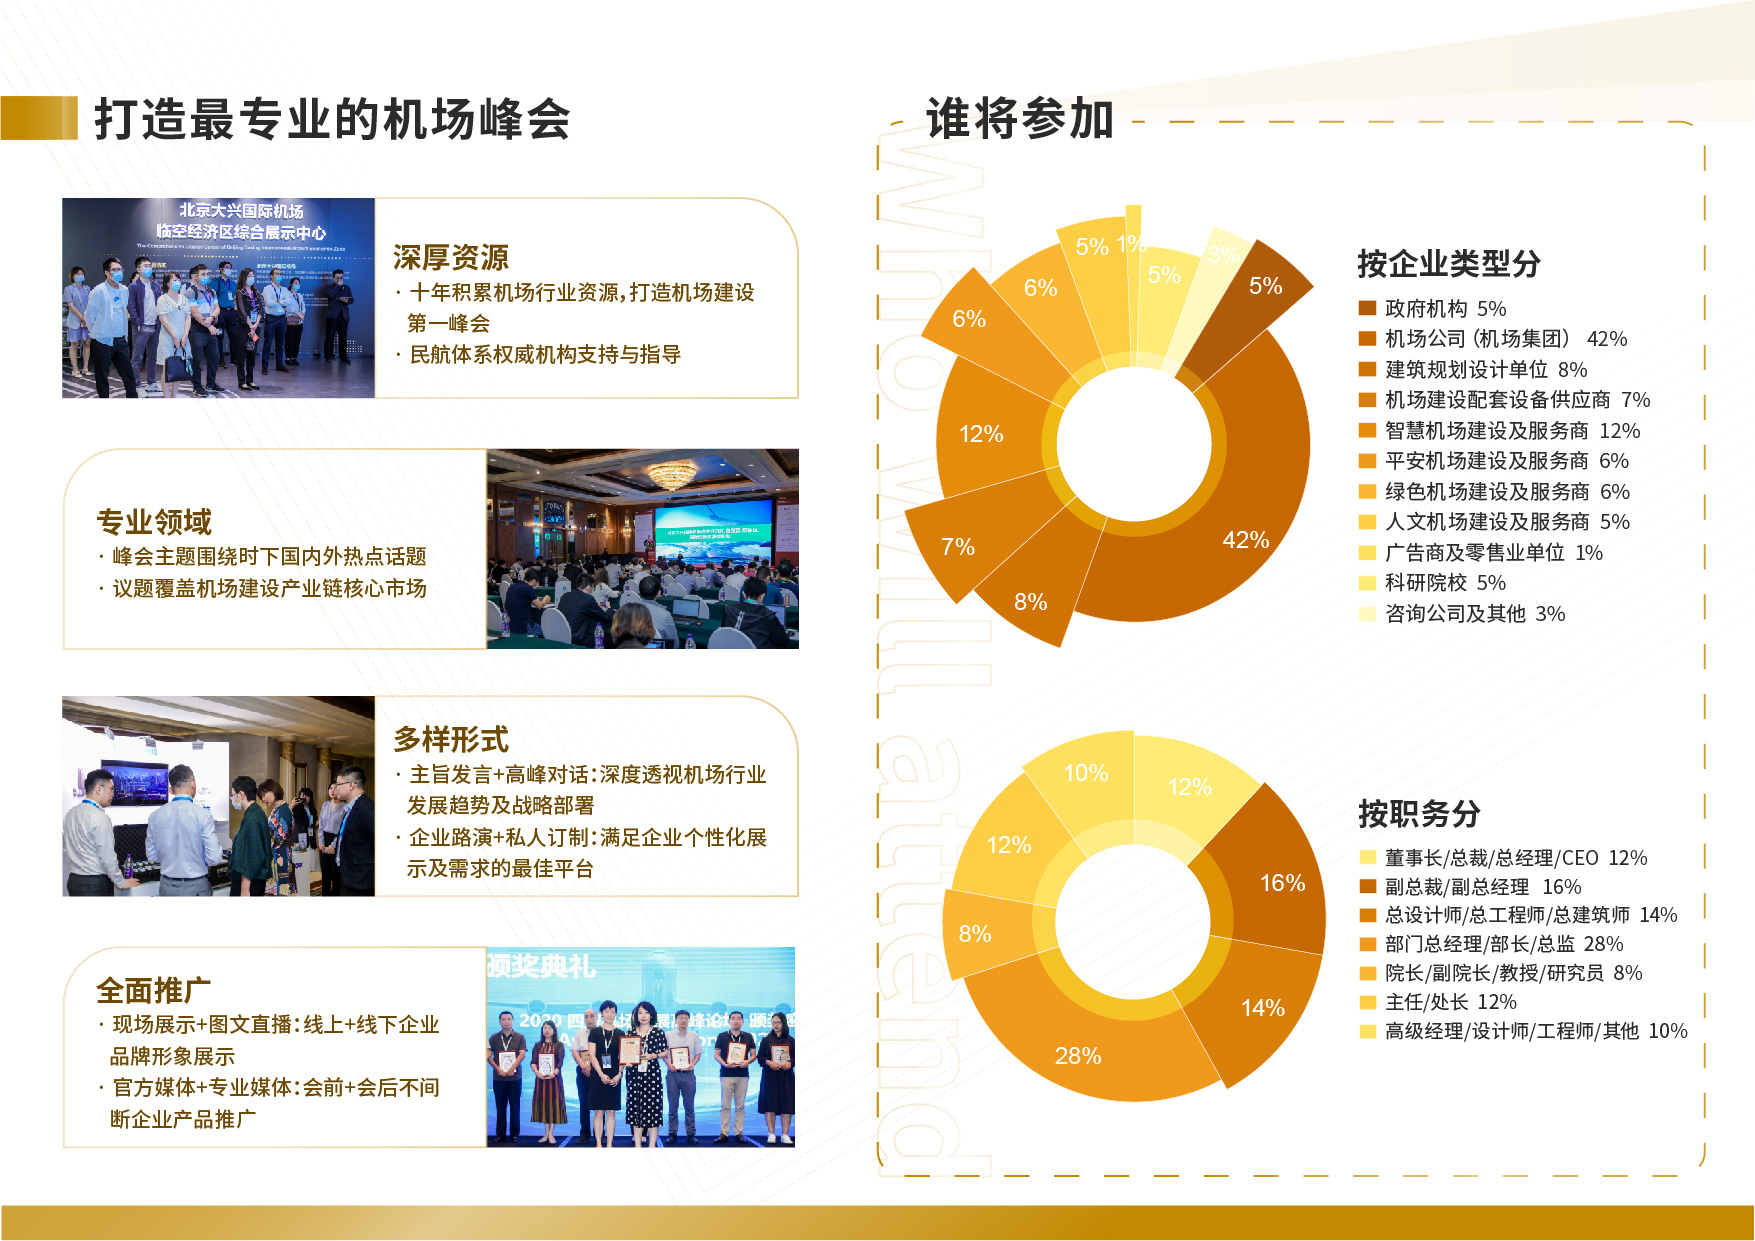 第十二屆中國四型機場發展高峰論壇